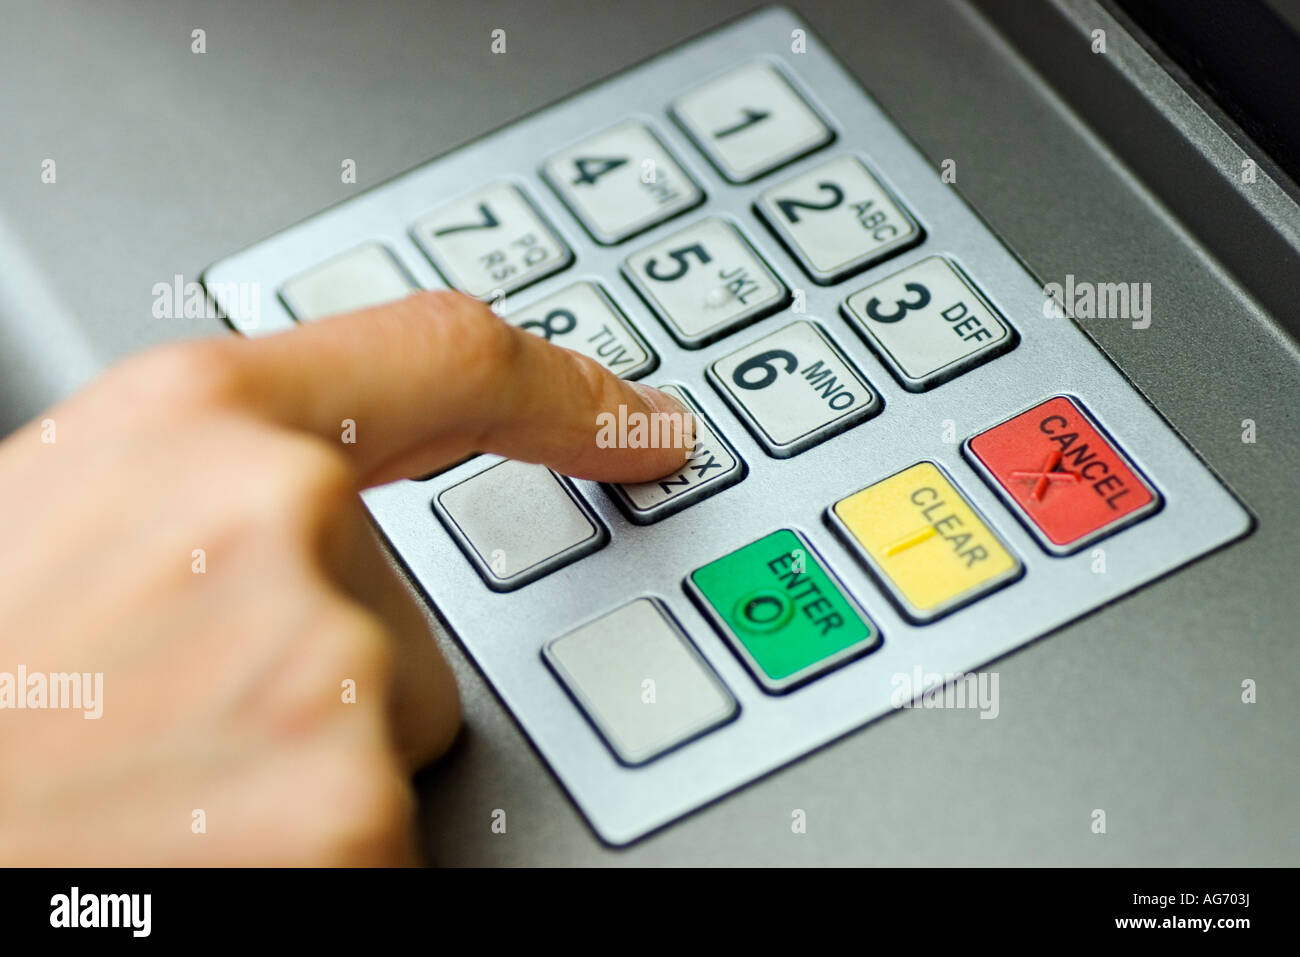 Codice di sicurezza essendo inserito in un sistema automatizzato di bancomat Foto Stock